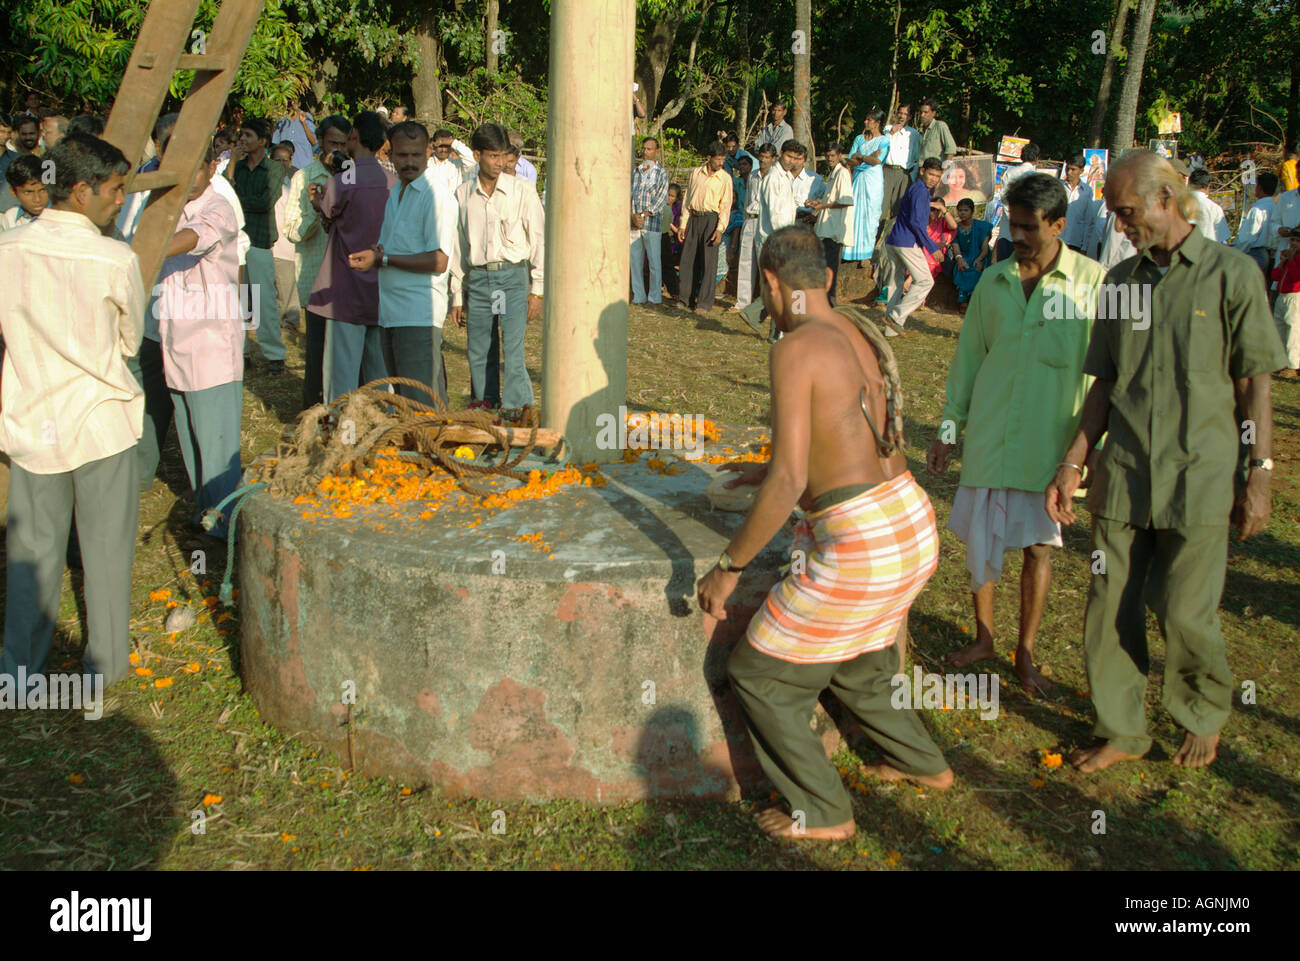 Una tradizione religiosa denominata "Bagada'. I devoti ottiene hoocked e poi impiccato nel nome di Dio (Vyagrambari). Narvan, Foto Stock